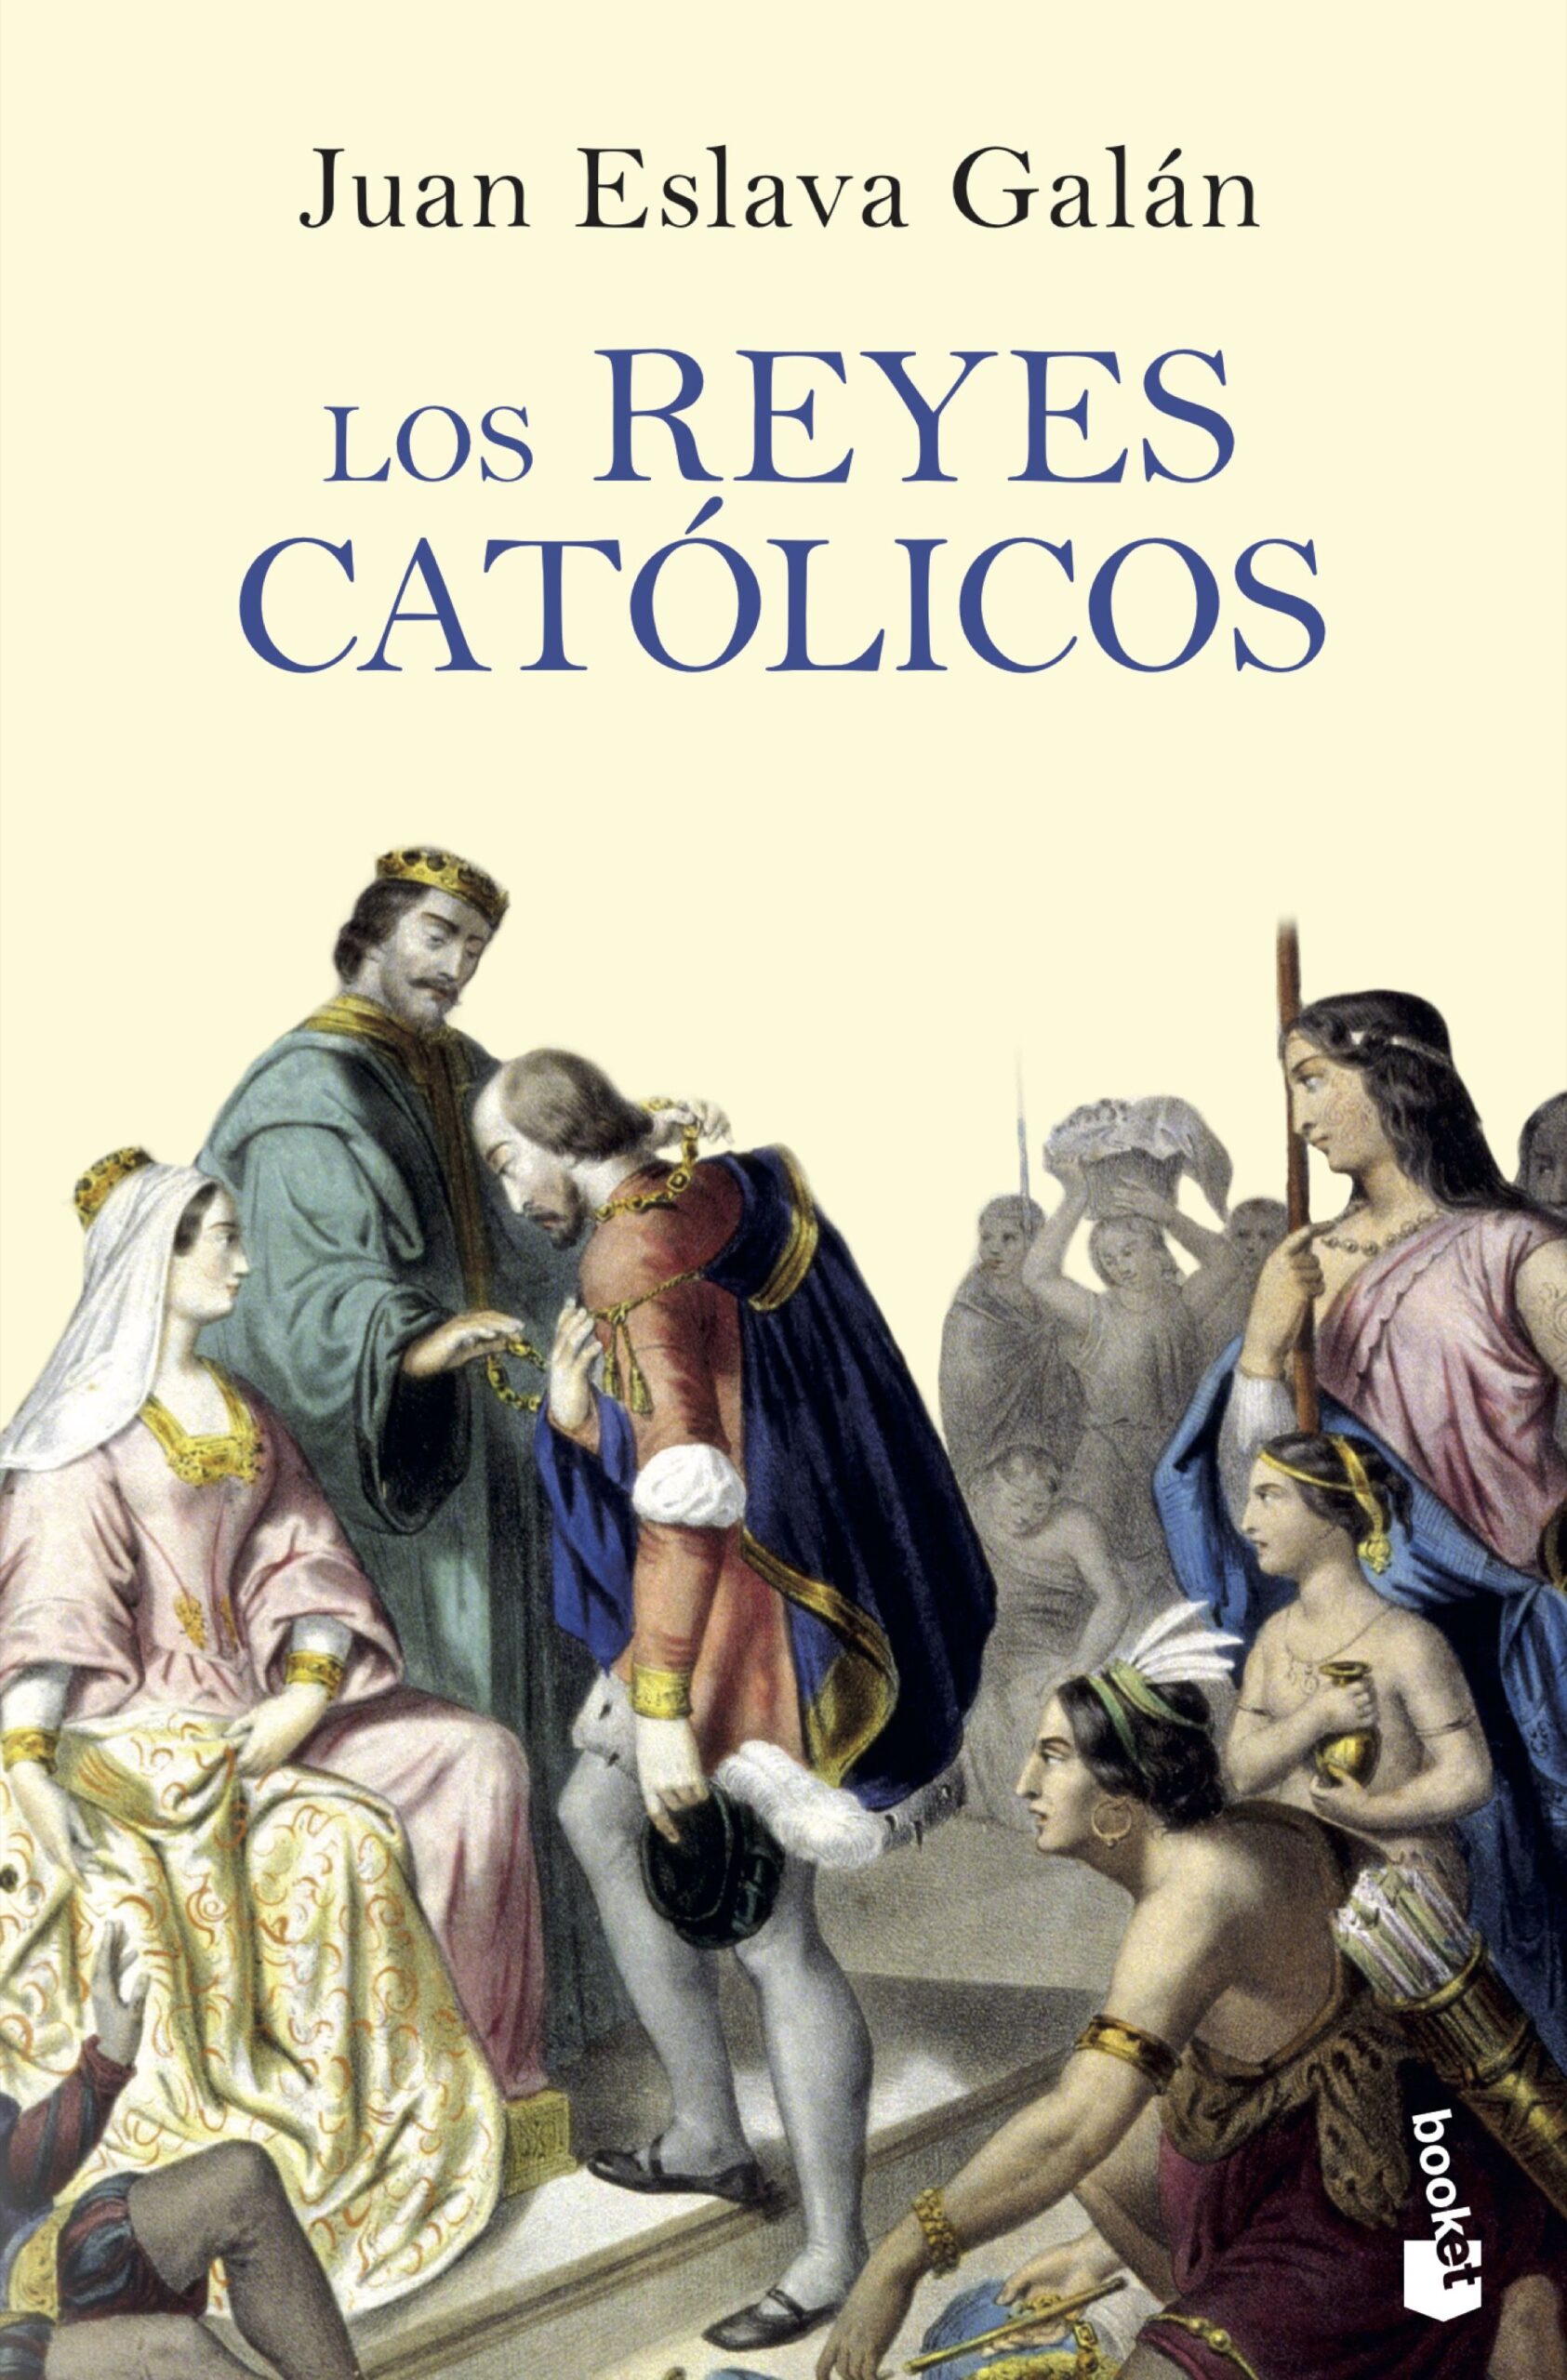 Juan Eslava Galán - Los Reyes Católicos